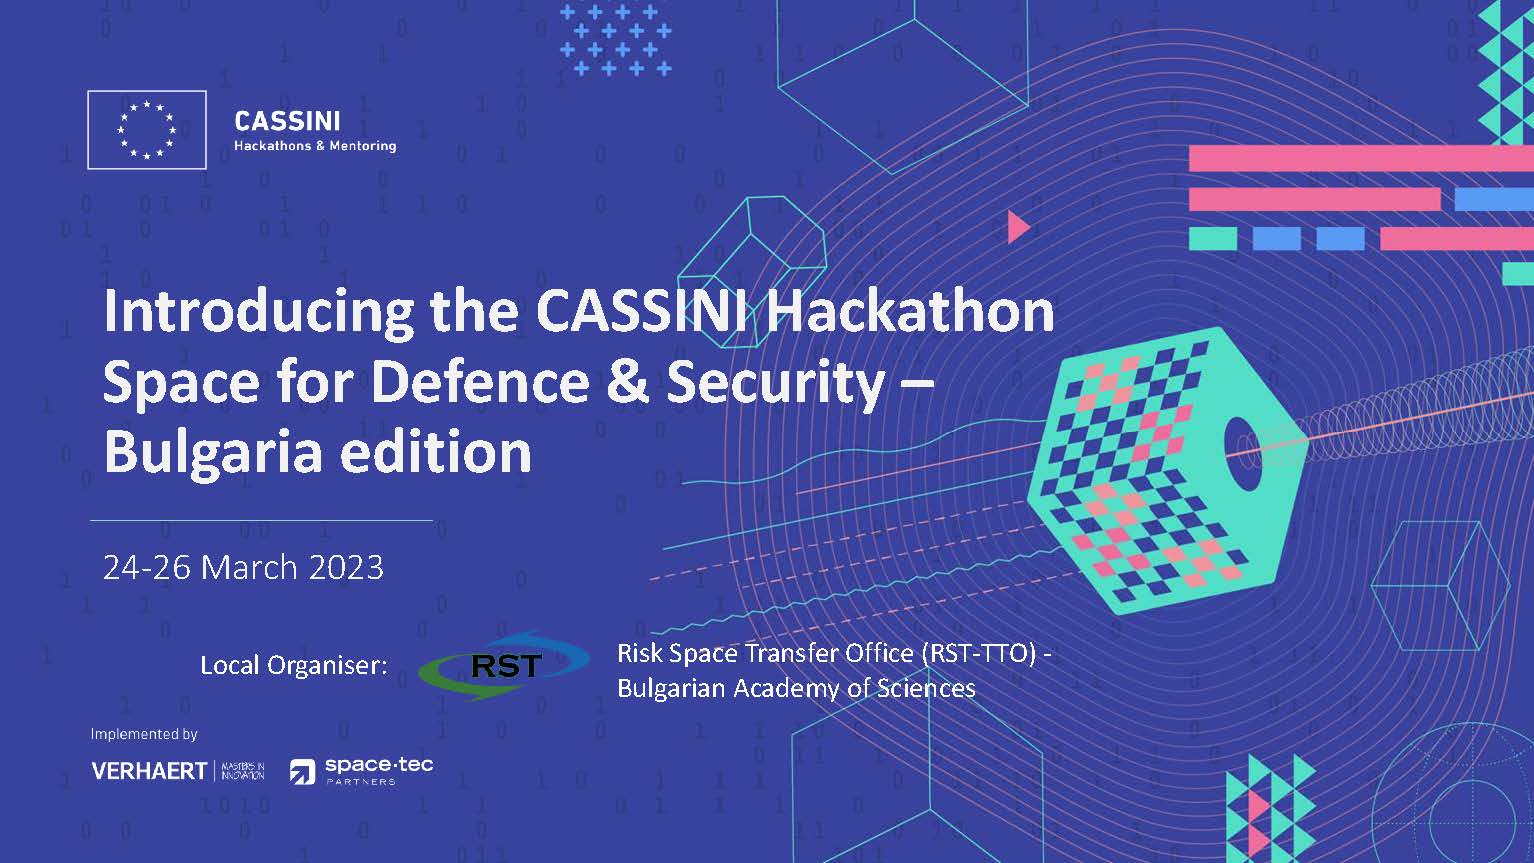 CASSINI Hackathon 2023 Bulgaria